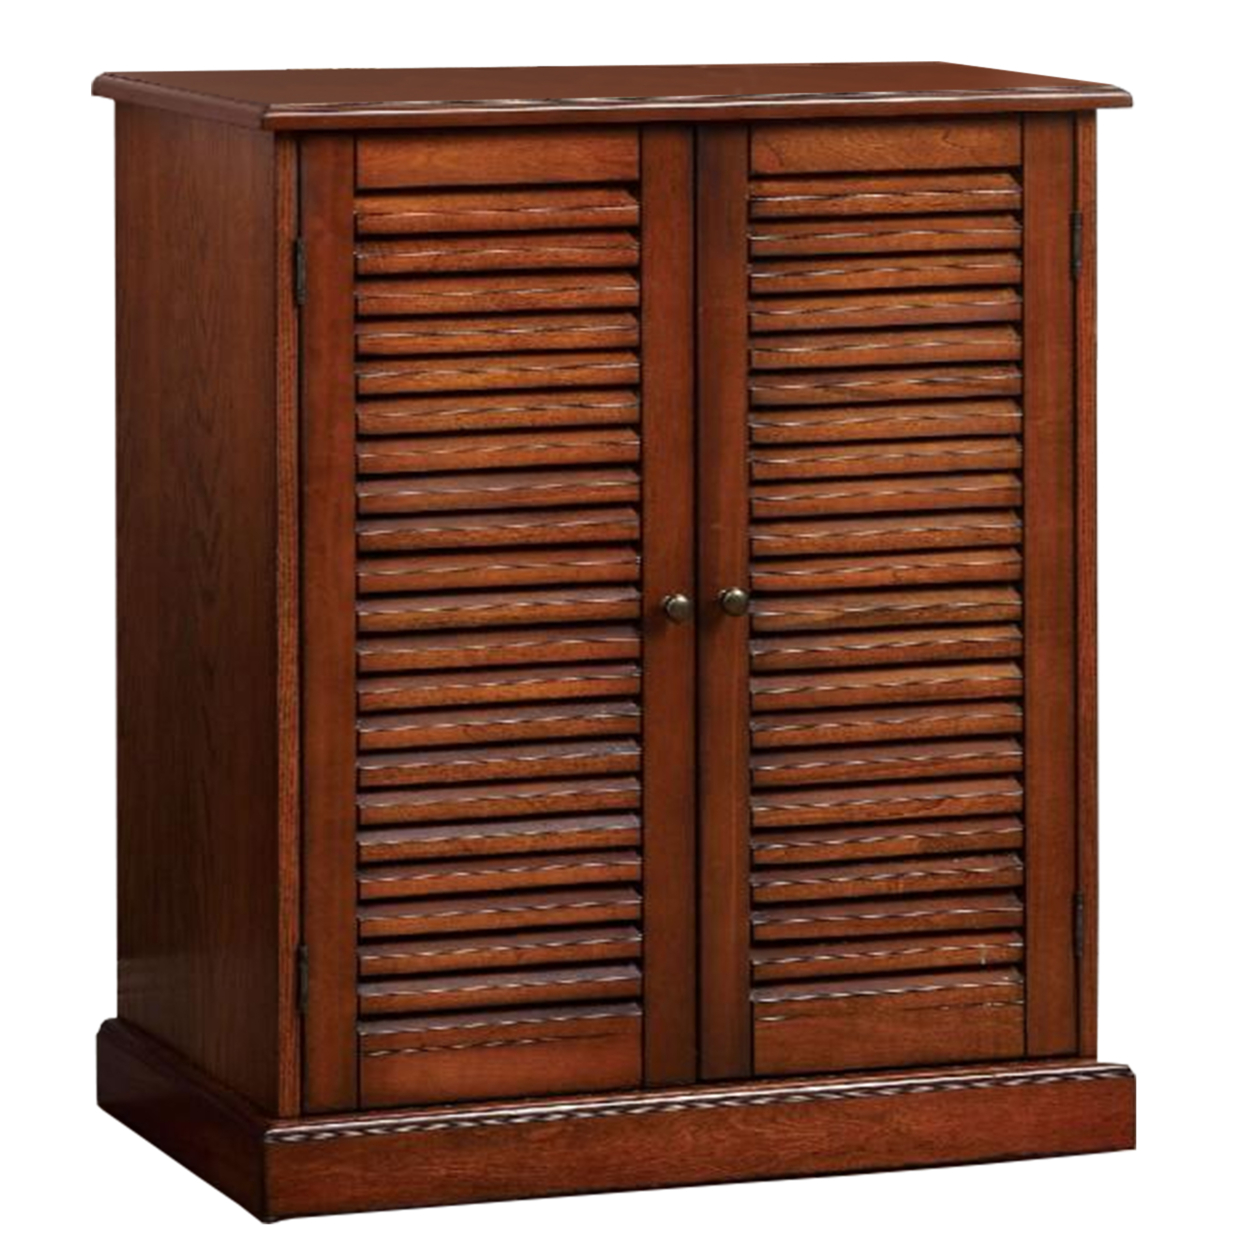 Double Door Solid Wood Shoe Cabinet With Blocked Panel Feet, Brown- Saltoro Sherpi